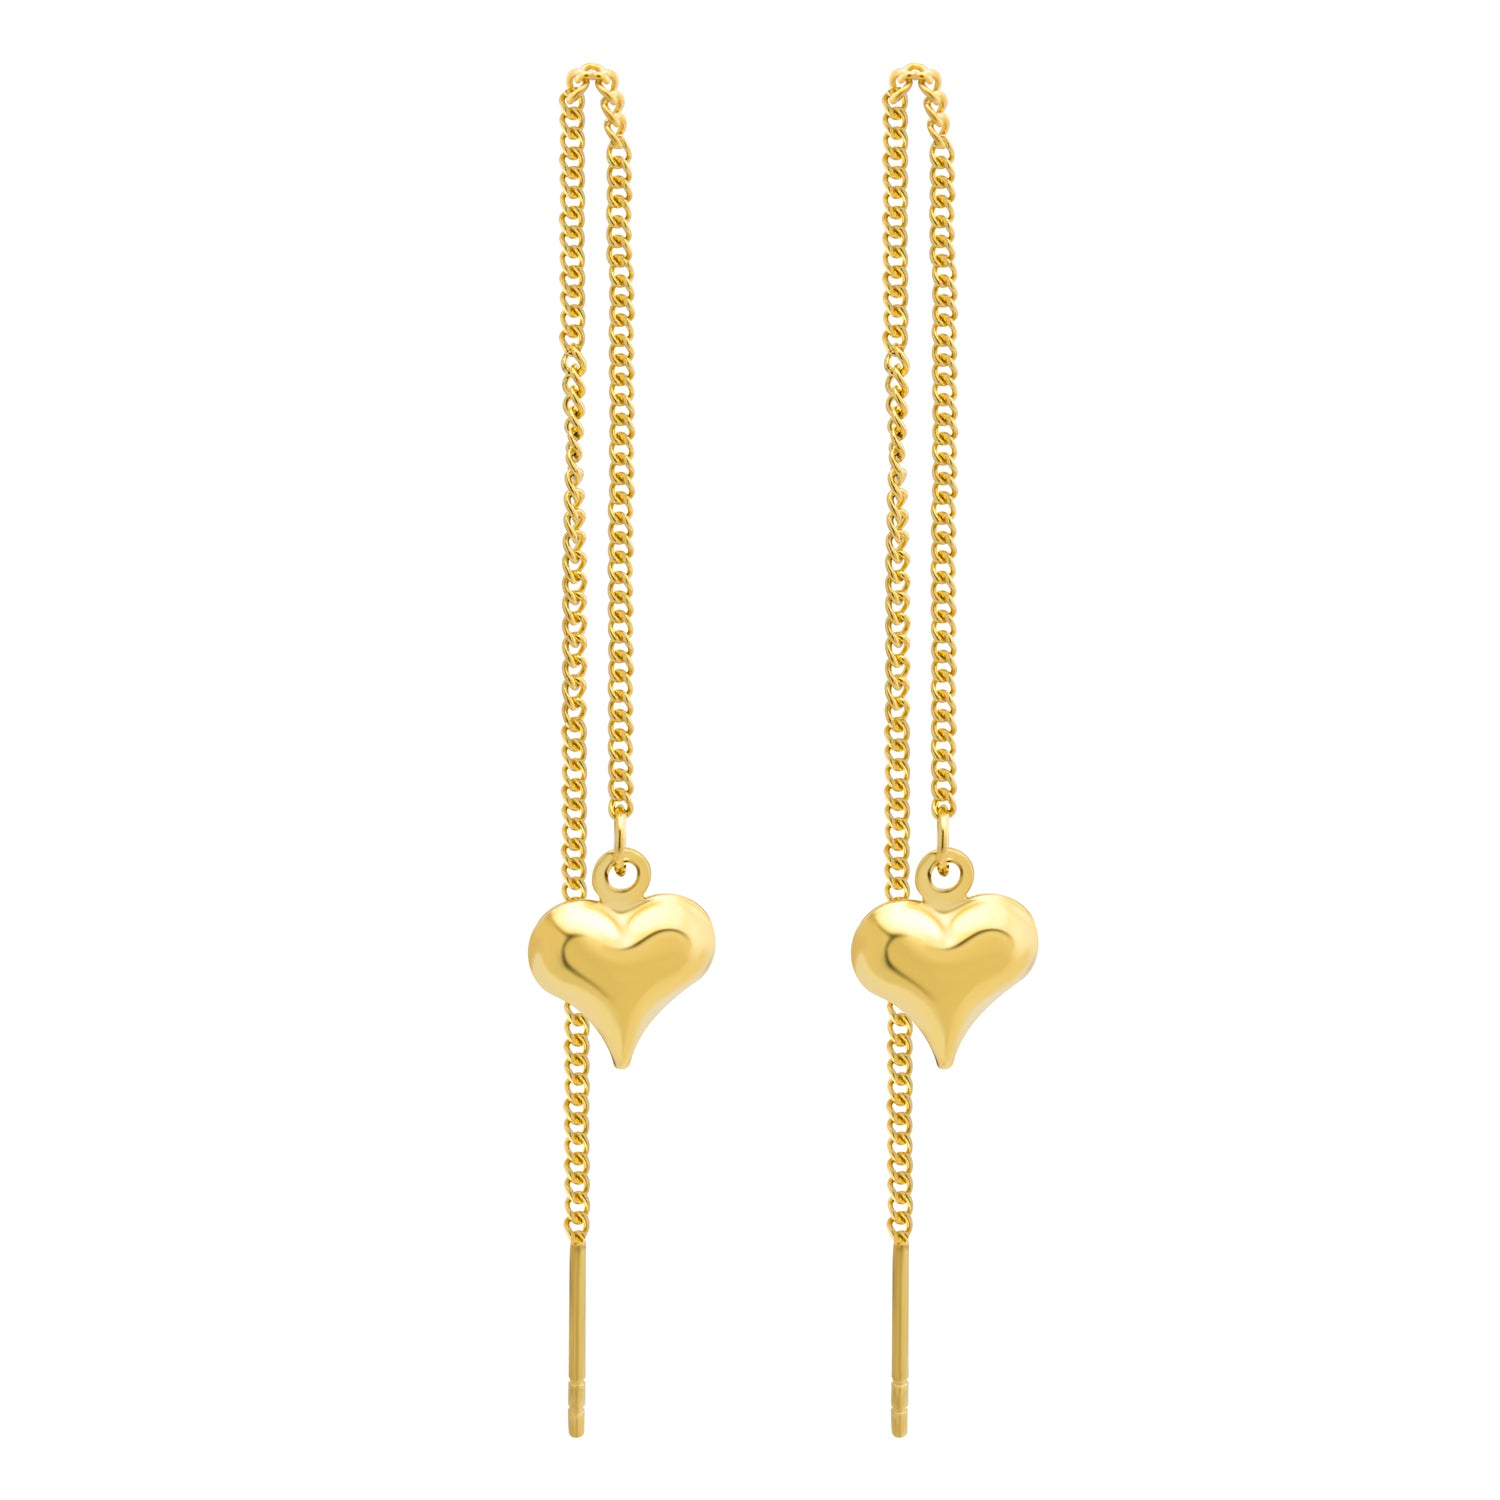 MNC-ER797-B Stainless Steel & Gold Threaded Heart Earrings